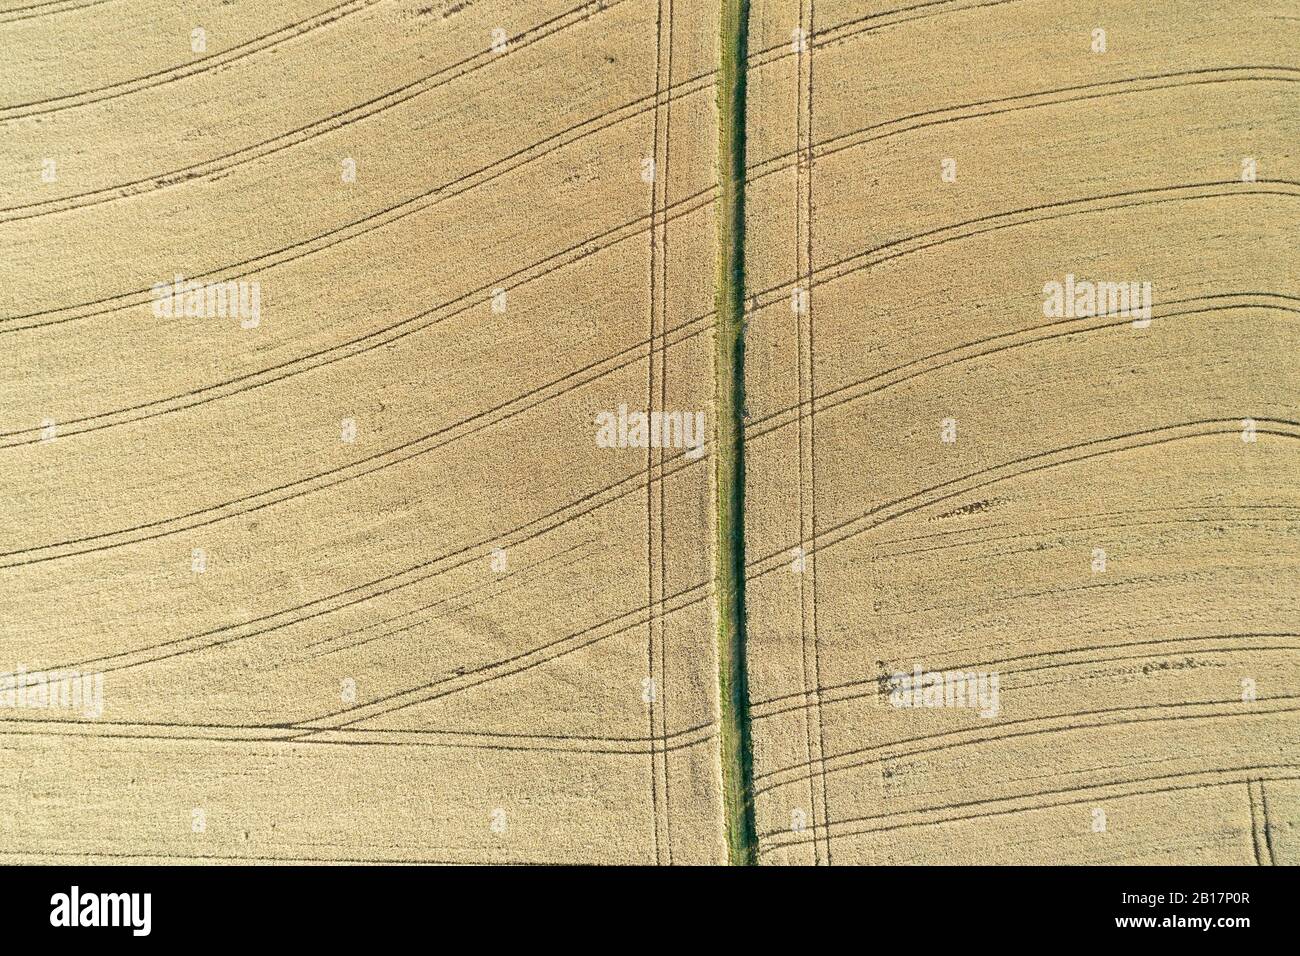 Vue aérienne de la route rurale de la terre (voie des pneus) à travers les champs agricoles de grains mûrs, plein cadre. Franconie, Bavière, Allemagne, Europe. Banque D'Images